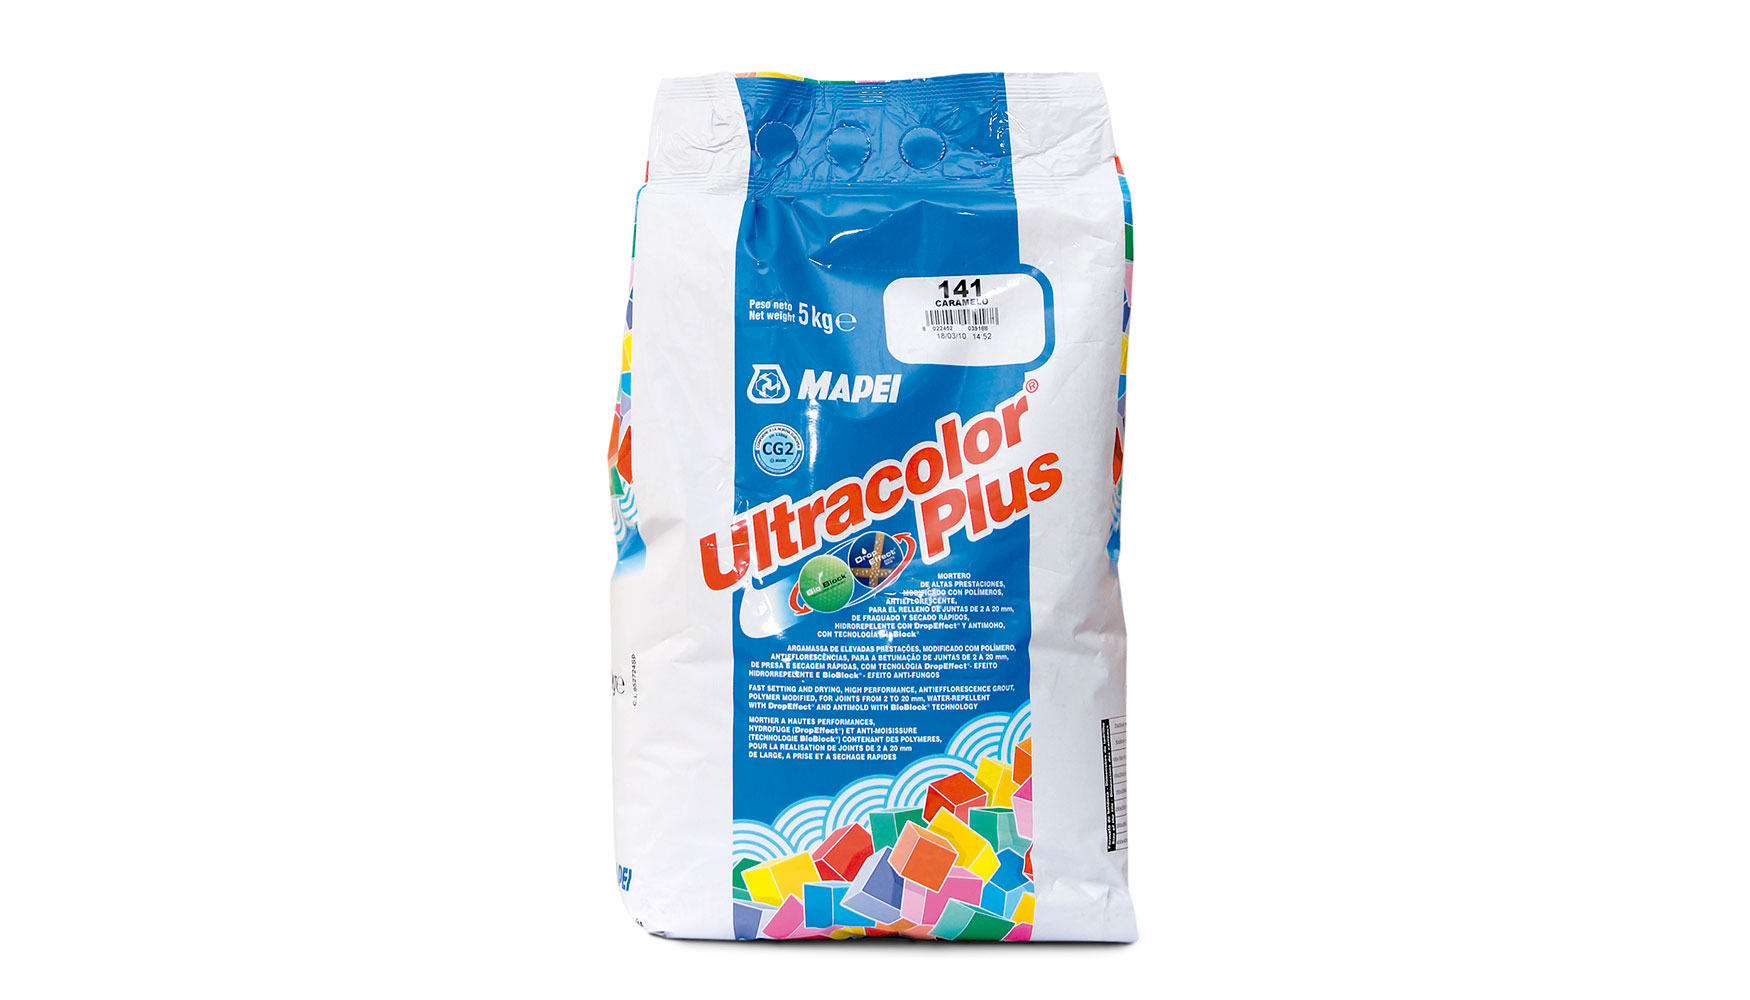 Ultracolor Plus, Producto Solidario de Mapei durante el mes de octubre